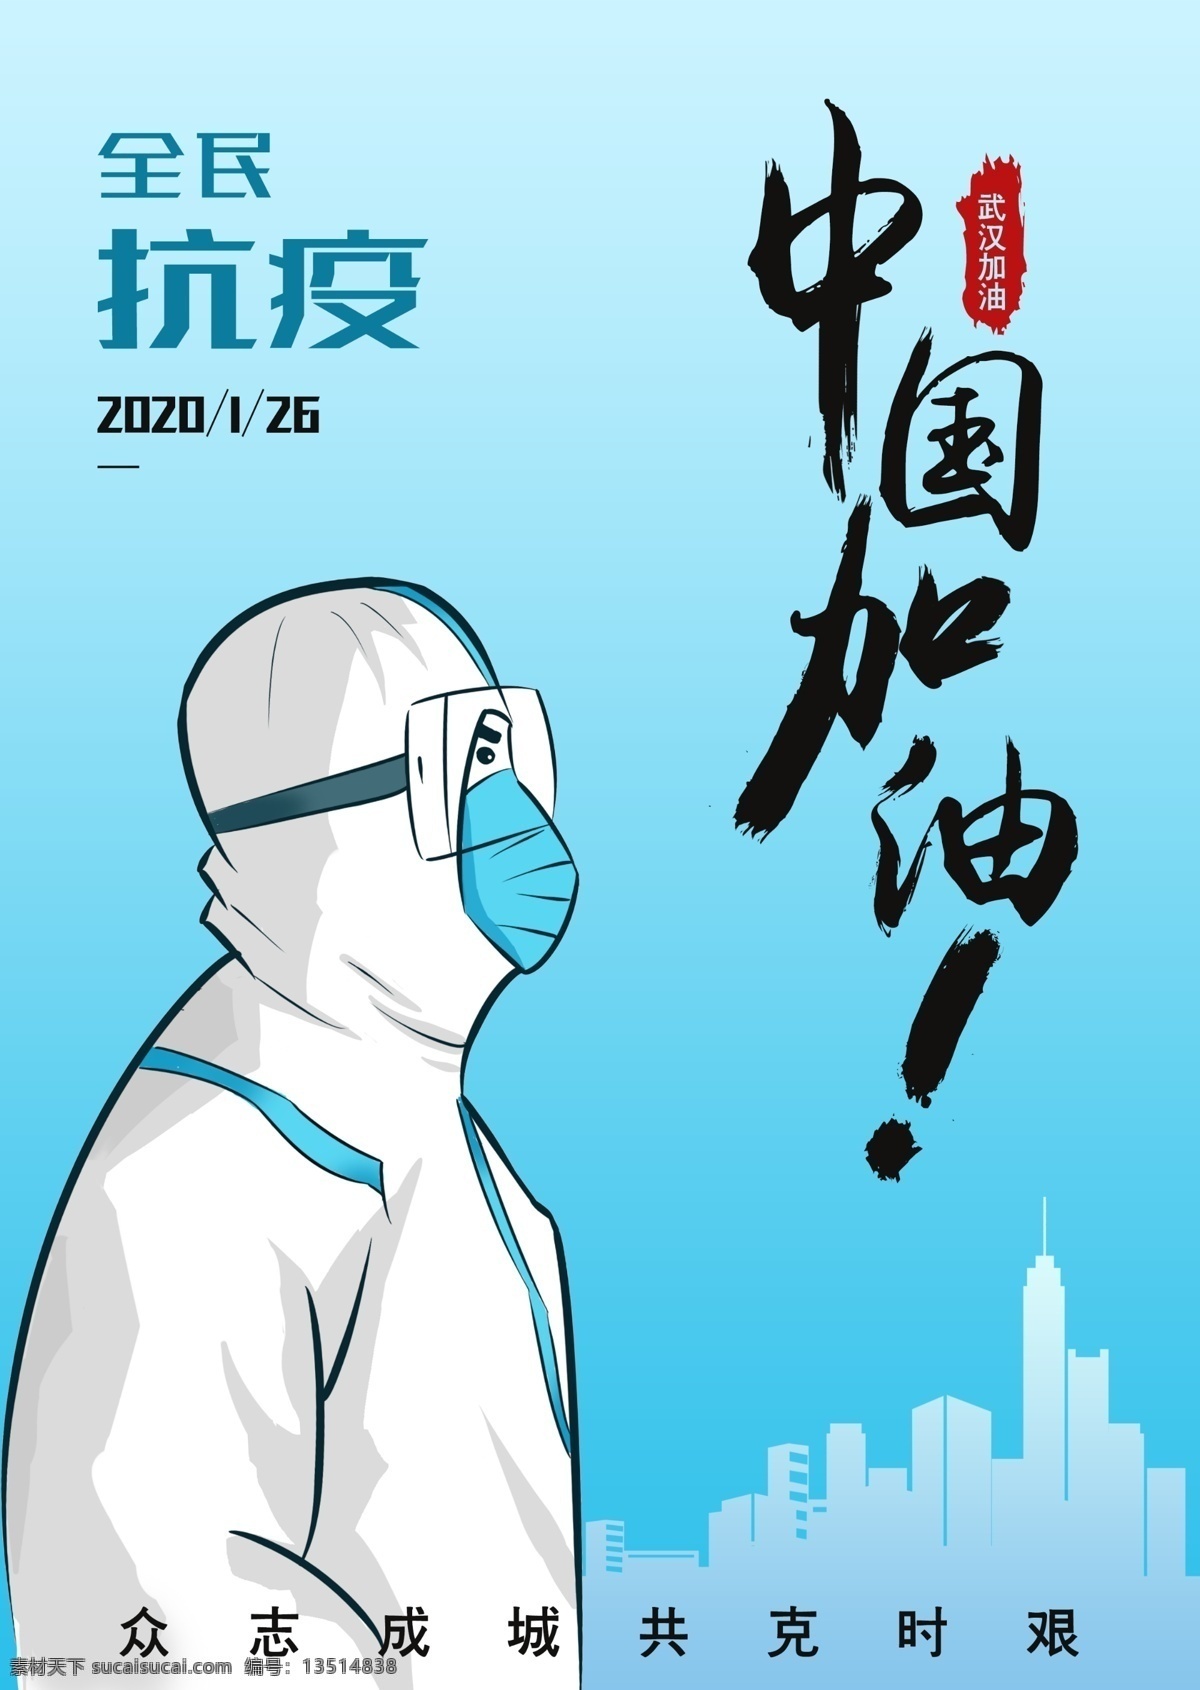 全民抗疫 中国加油 武汉加油 共克时艰 抗疫英雄 逆行者 卡通设计